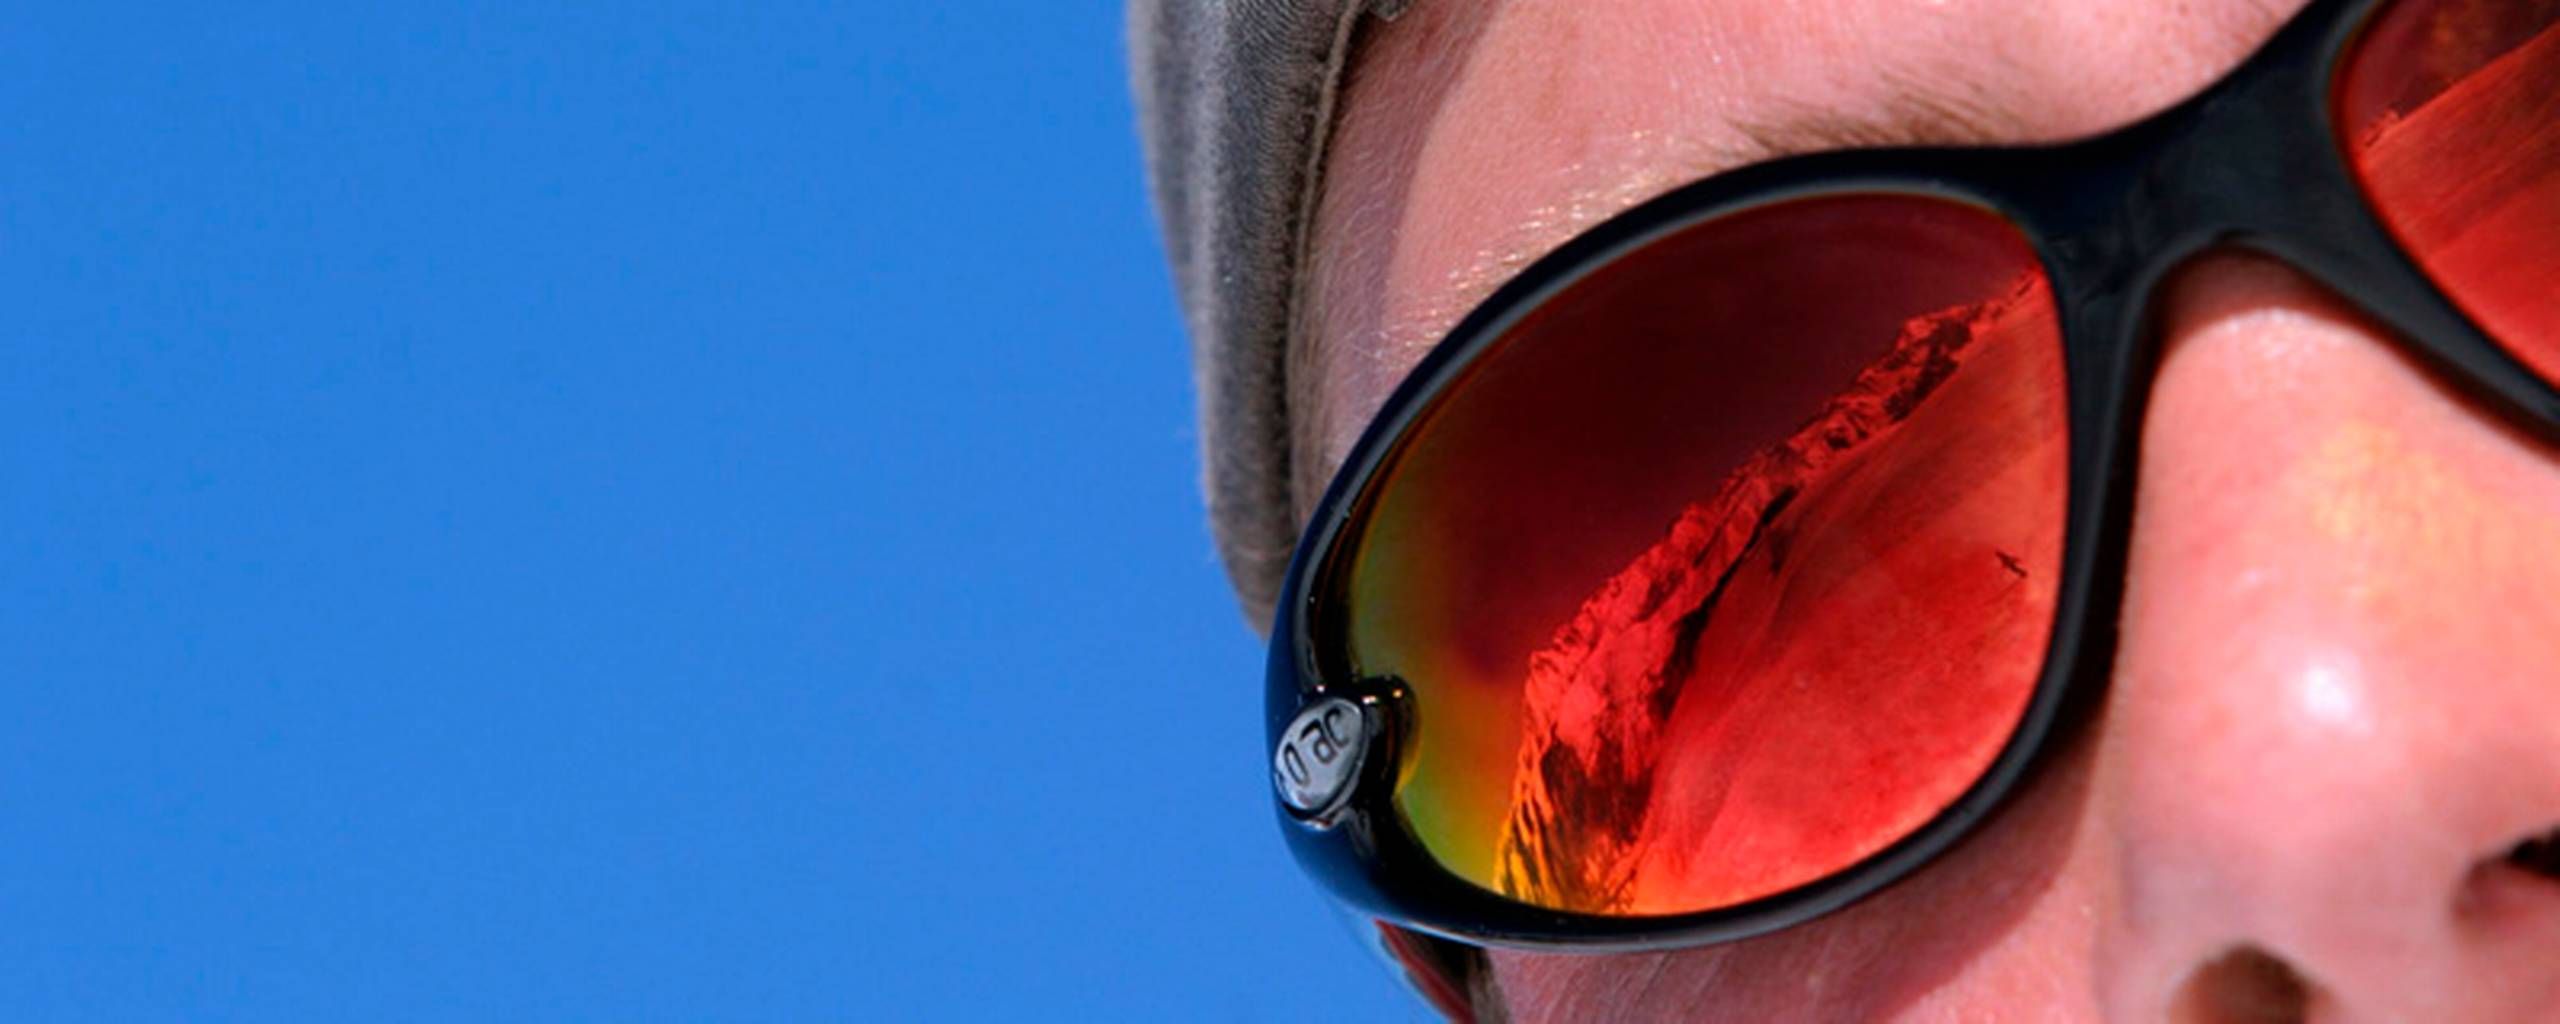 Optiker-råd solbriller er hen i